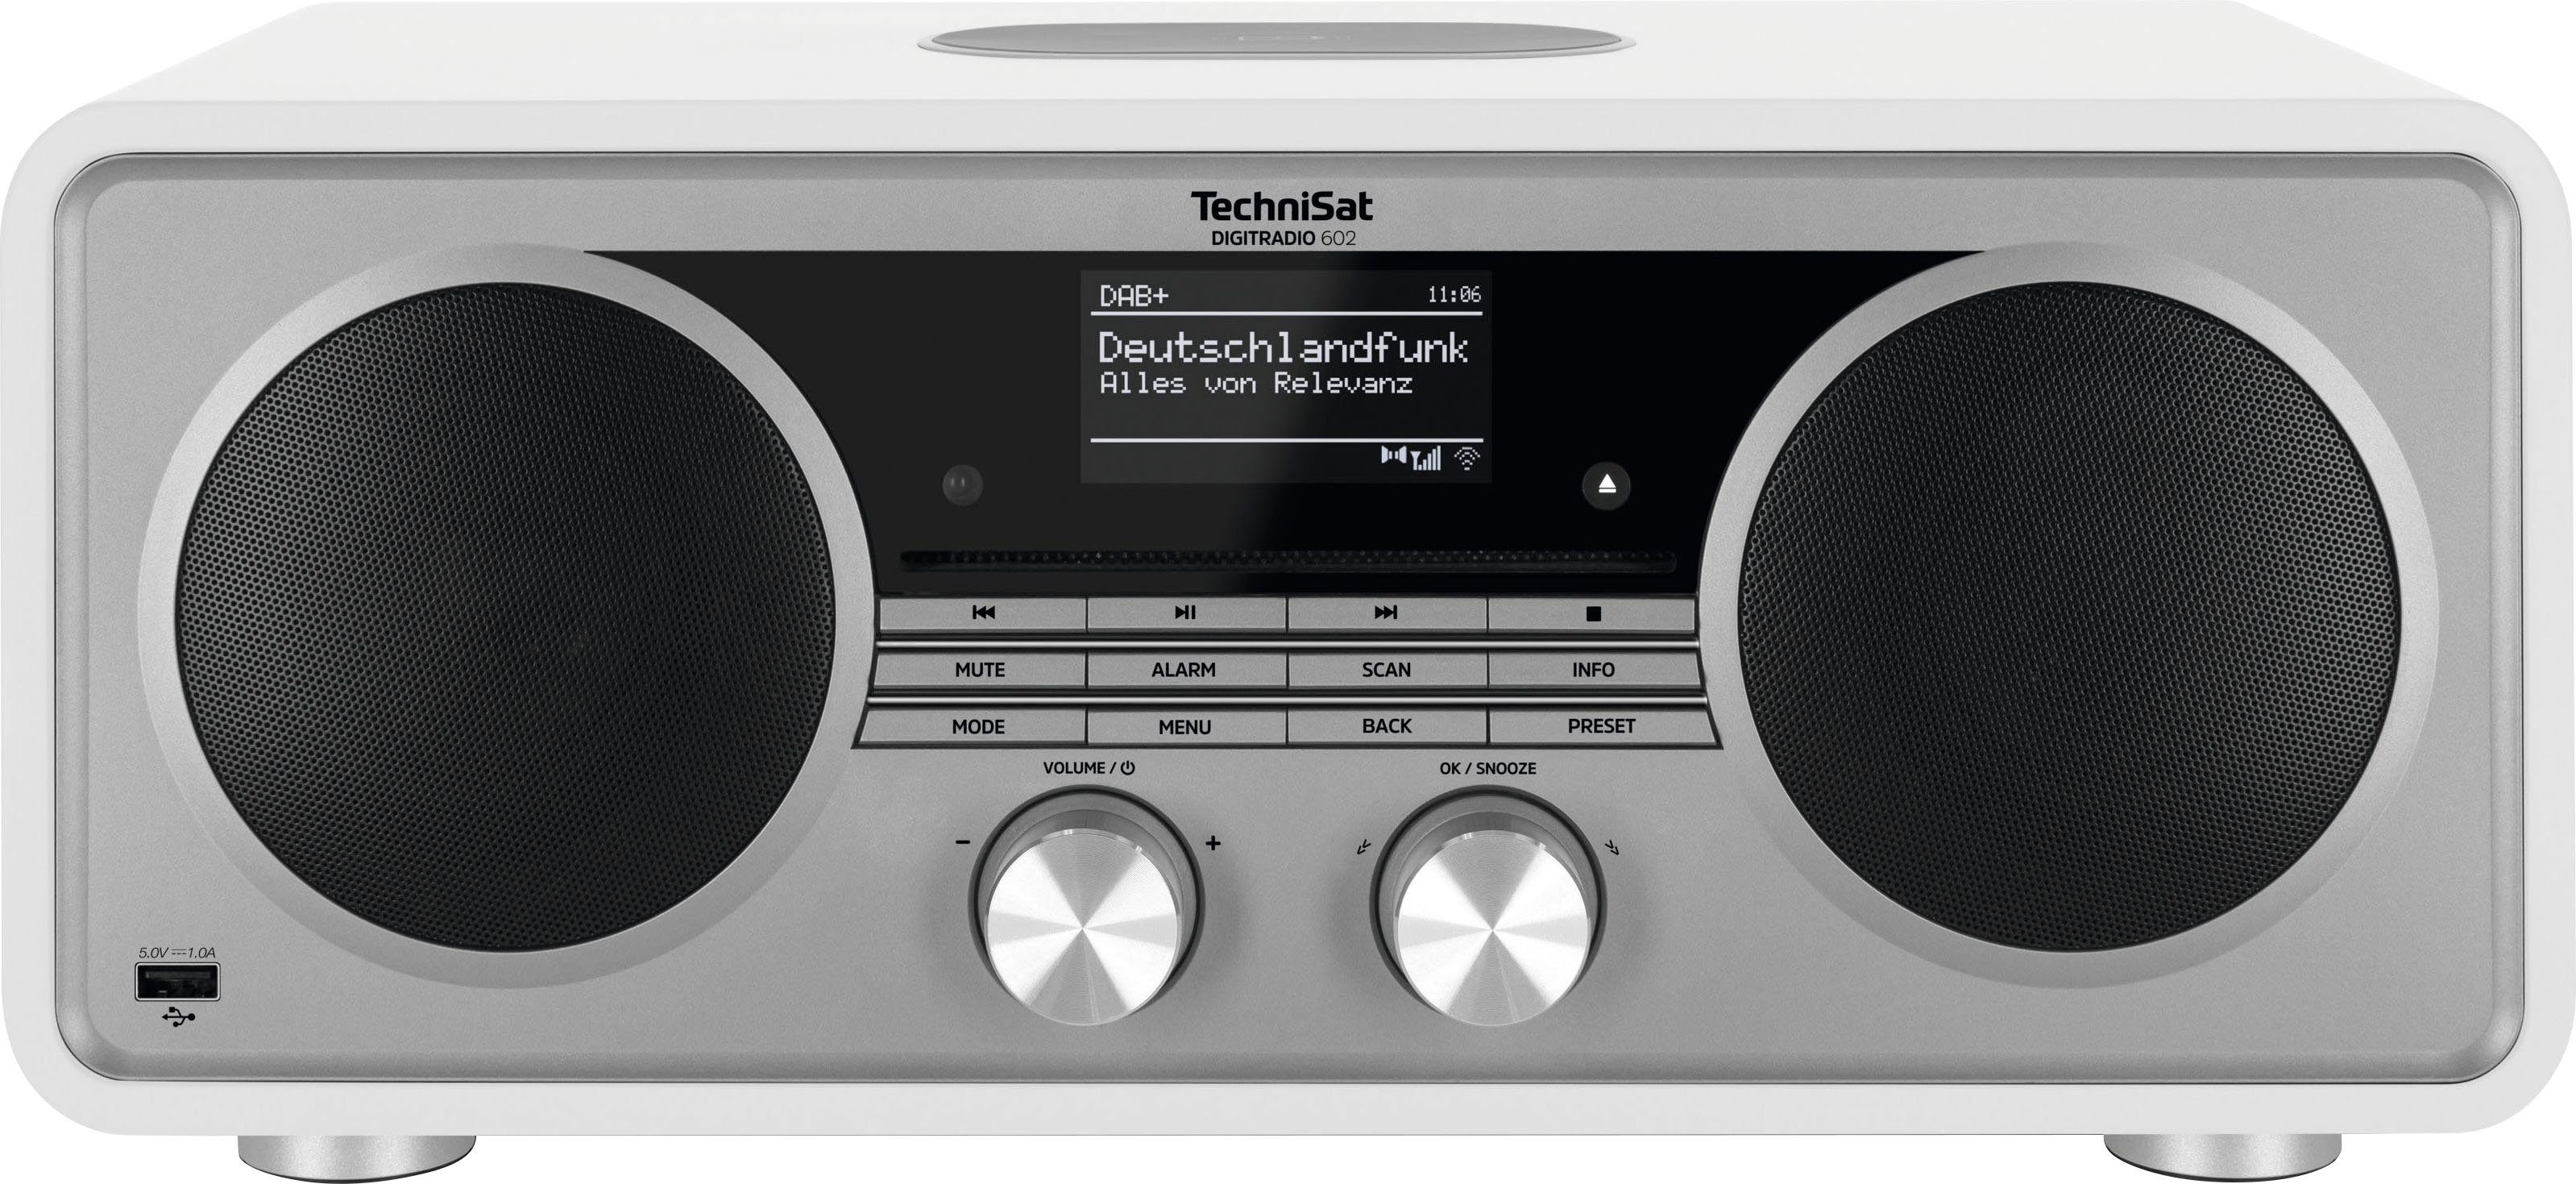 mit TechniSat 602 UKW (Digitalradio Stereoanlage, Internet-Radio DIGITRADIO CD-Player) Weiß/Silber 70 (DAB), W, RDS,